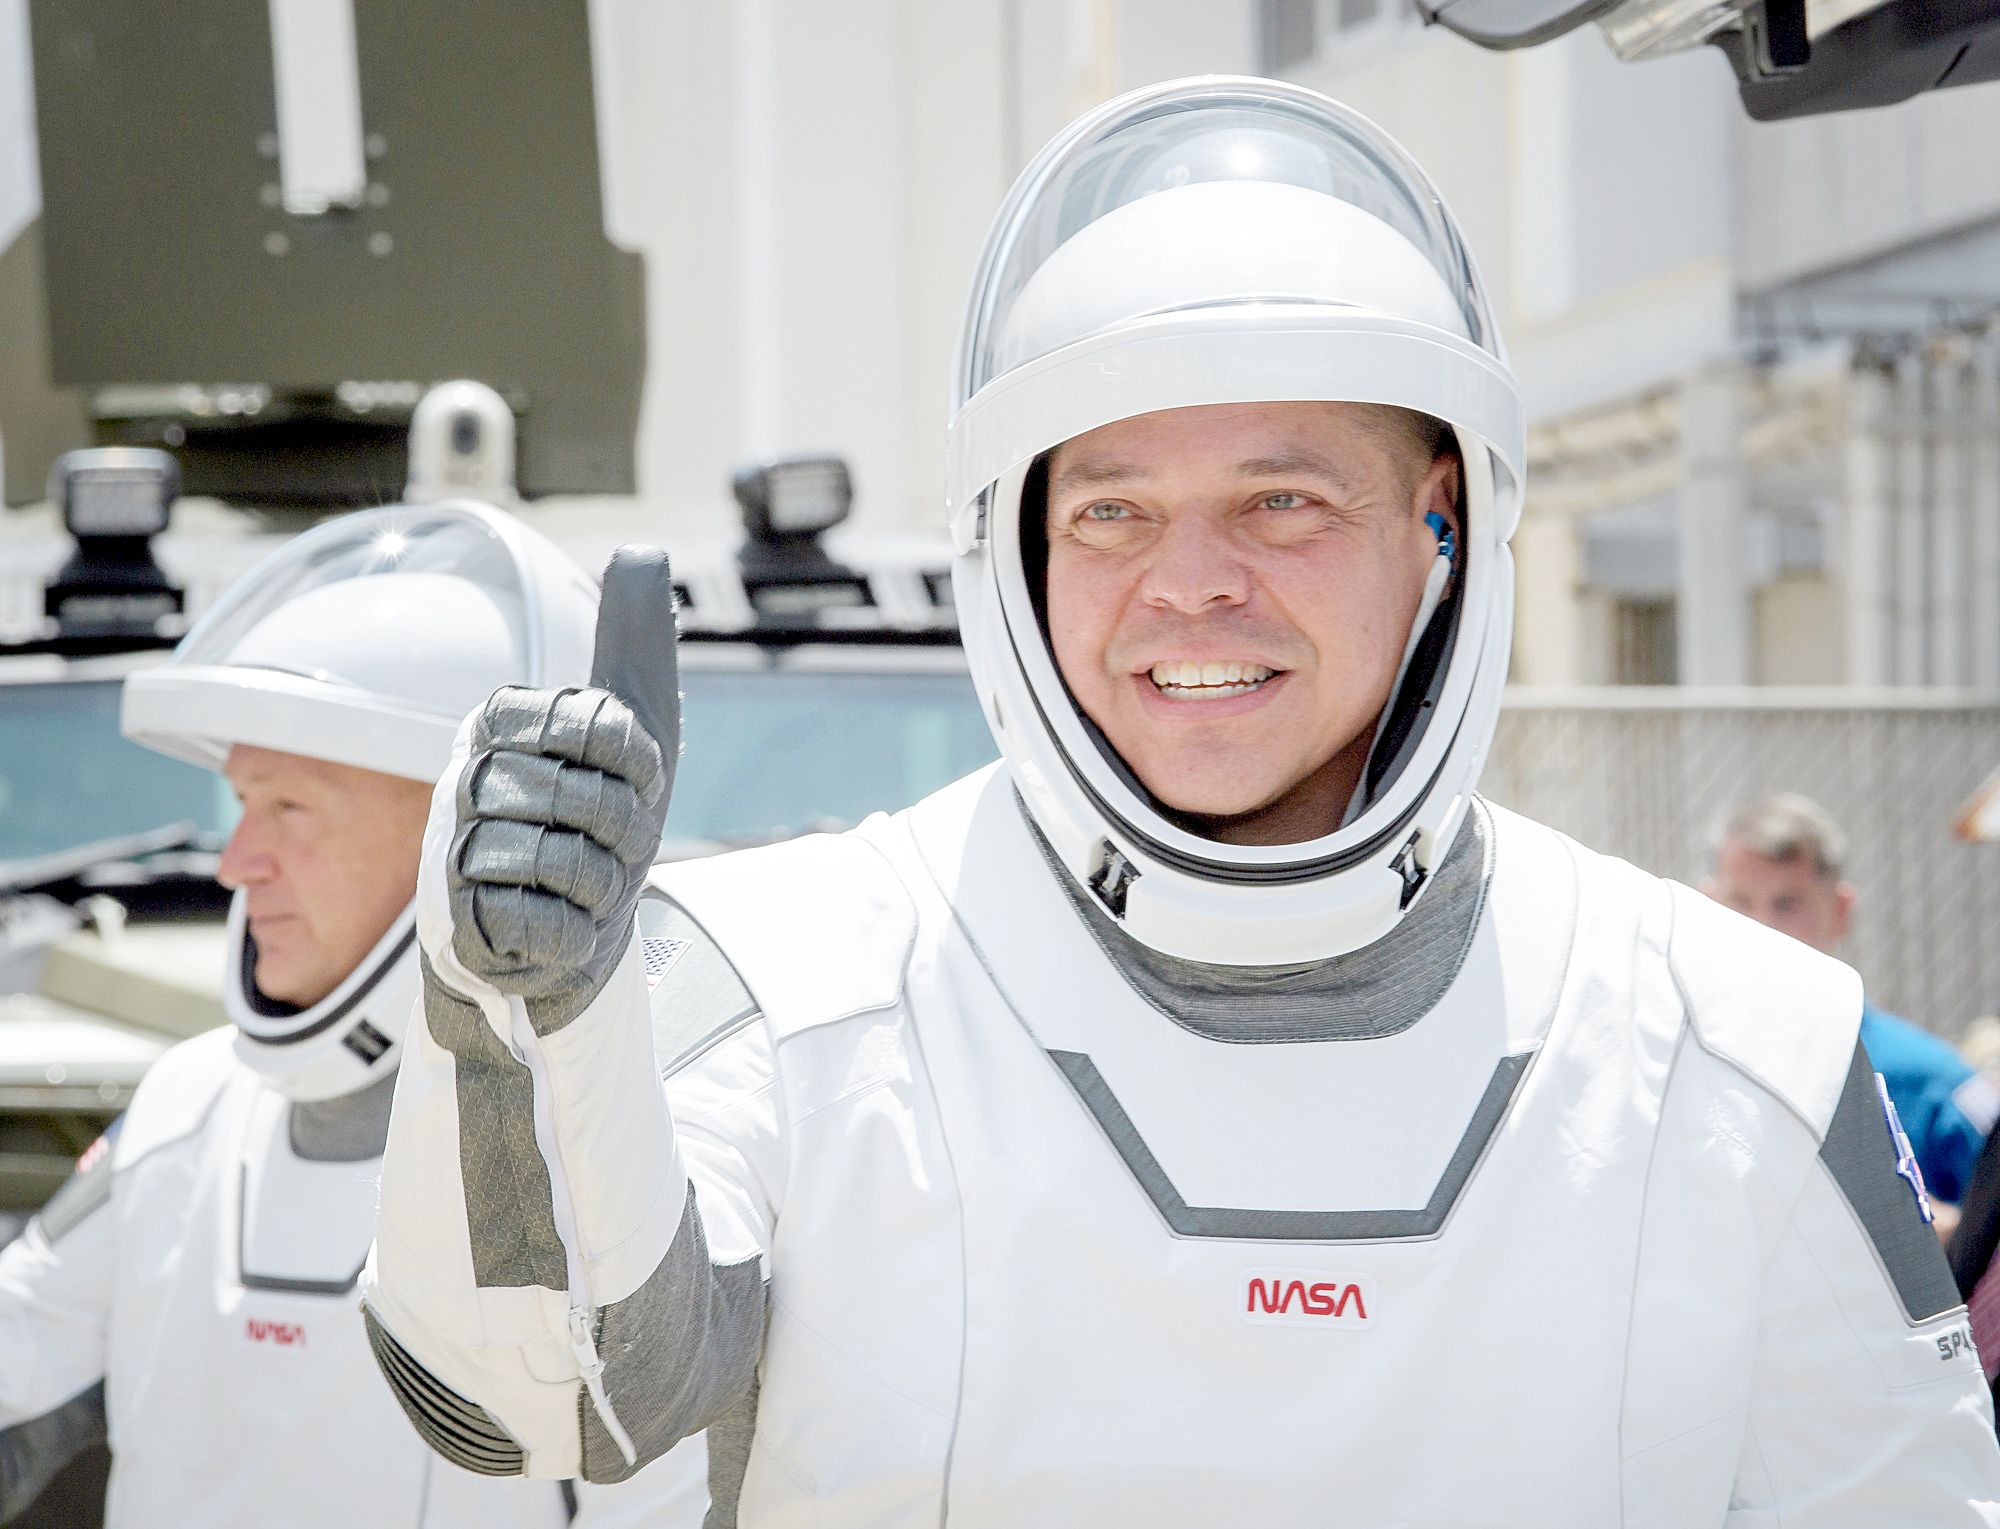 Doug Hurley và Bob Behnken là 2 người nhận nhiệm vụ lần này. Cả hai cũng từng có kinh nghiệm đi trên các tàu con thoi. Tại ISS, họ sẽ kết hợp với đồng nghiệp Chris Cassidy và 2 phi hành gia người Nga ở đây thực hiện các nhiệm vụ khoa học - Ảnh: NASA